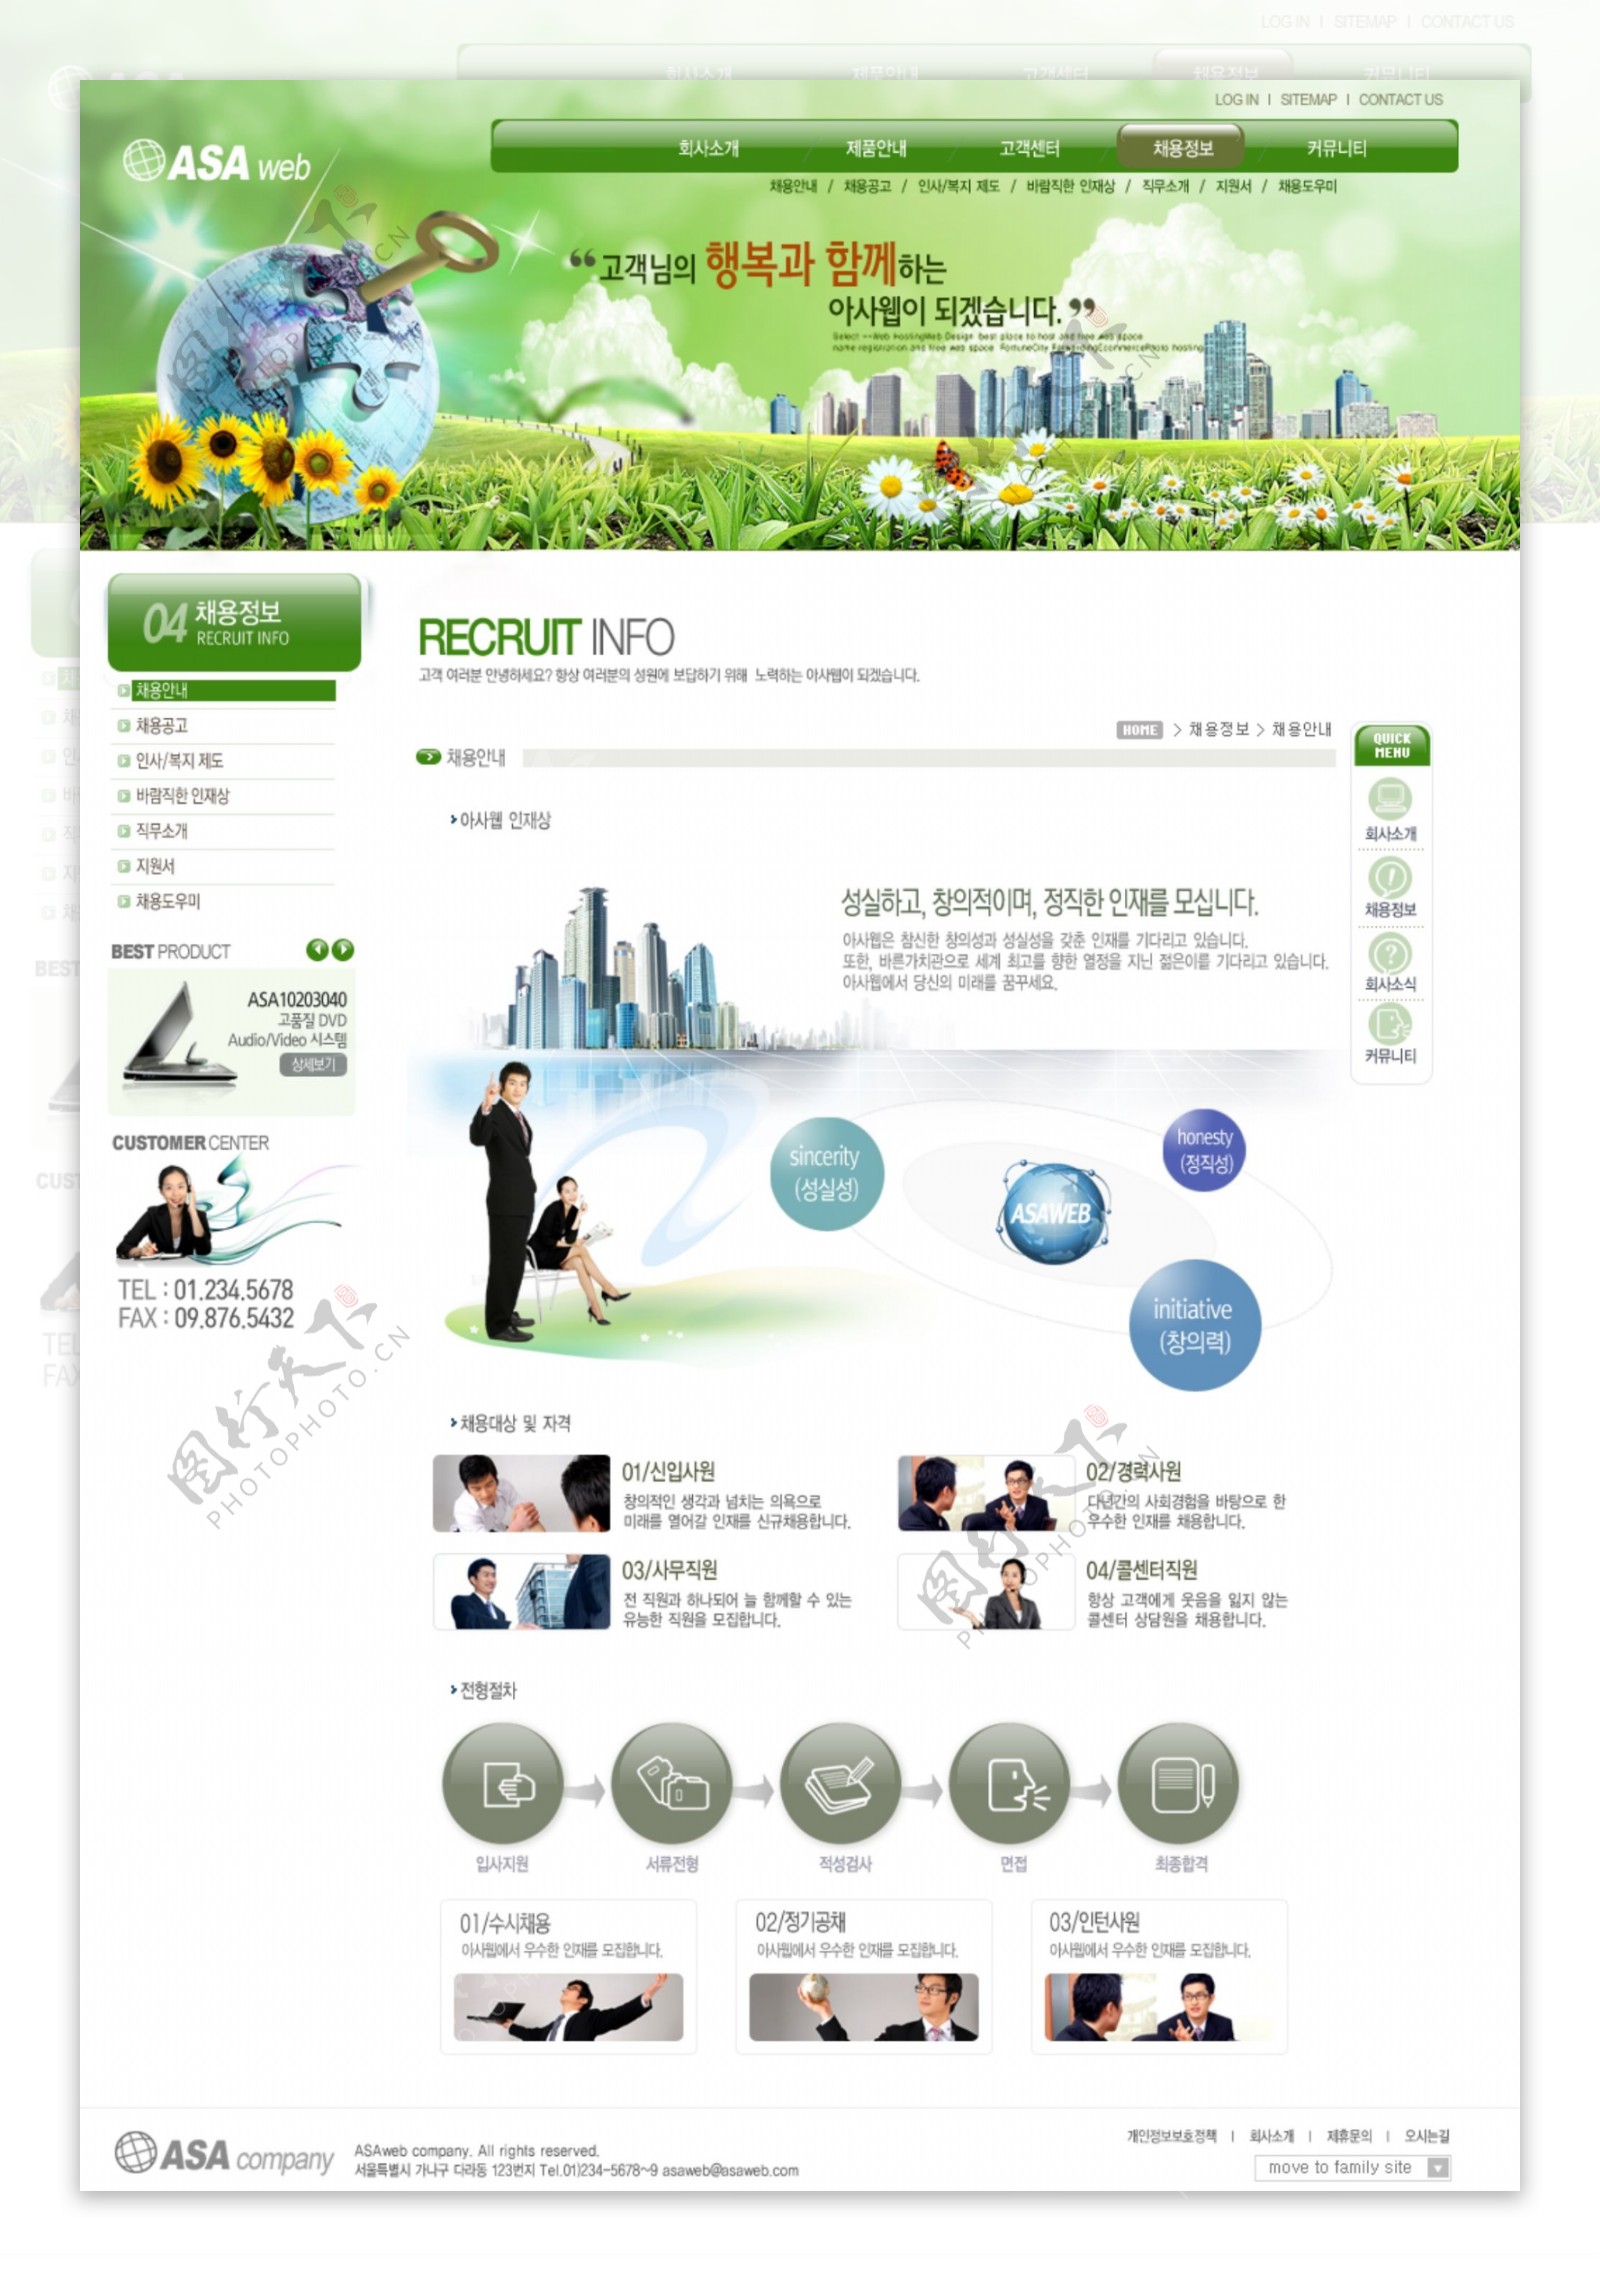 绿色商业合作网页模板